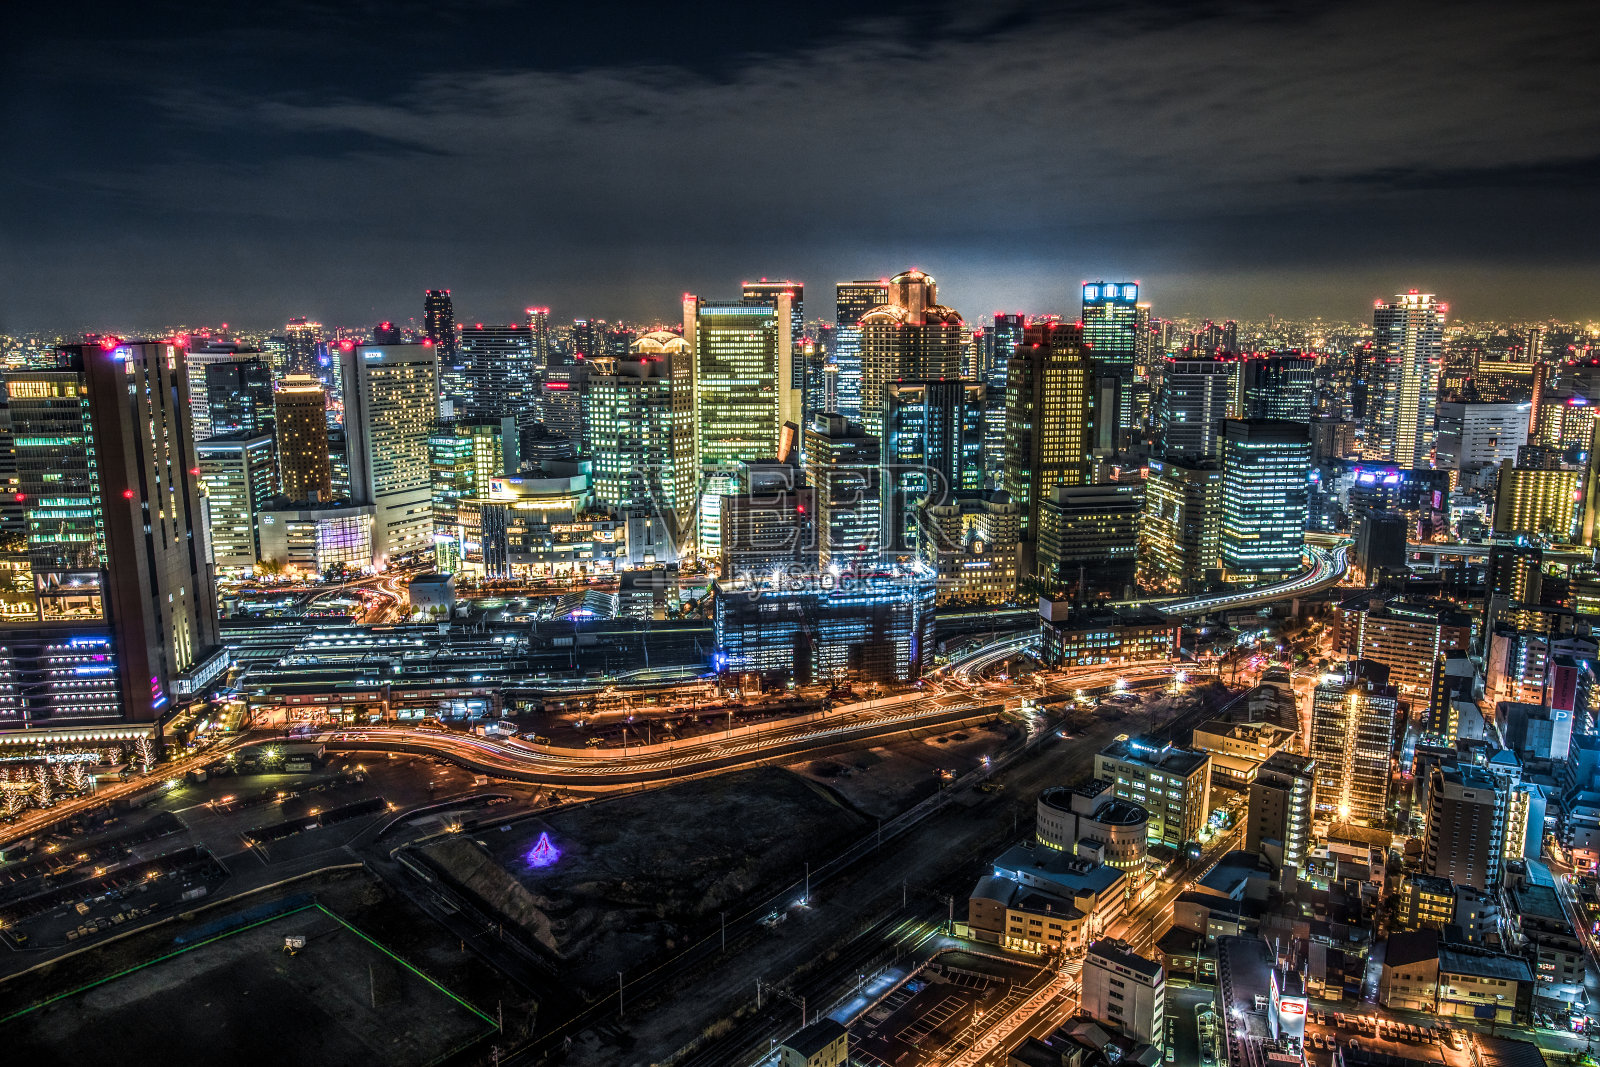 日本大阪市区夜景鸟瞰照片摄影图片